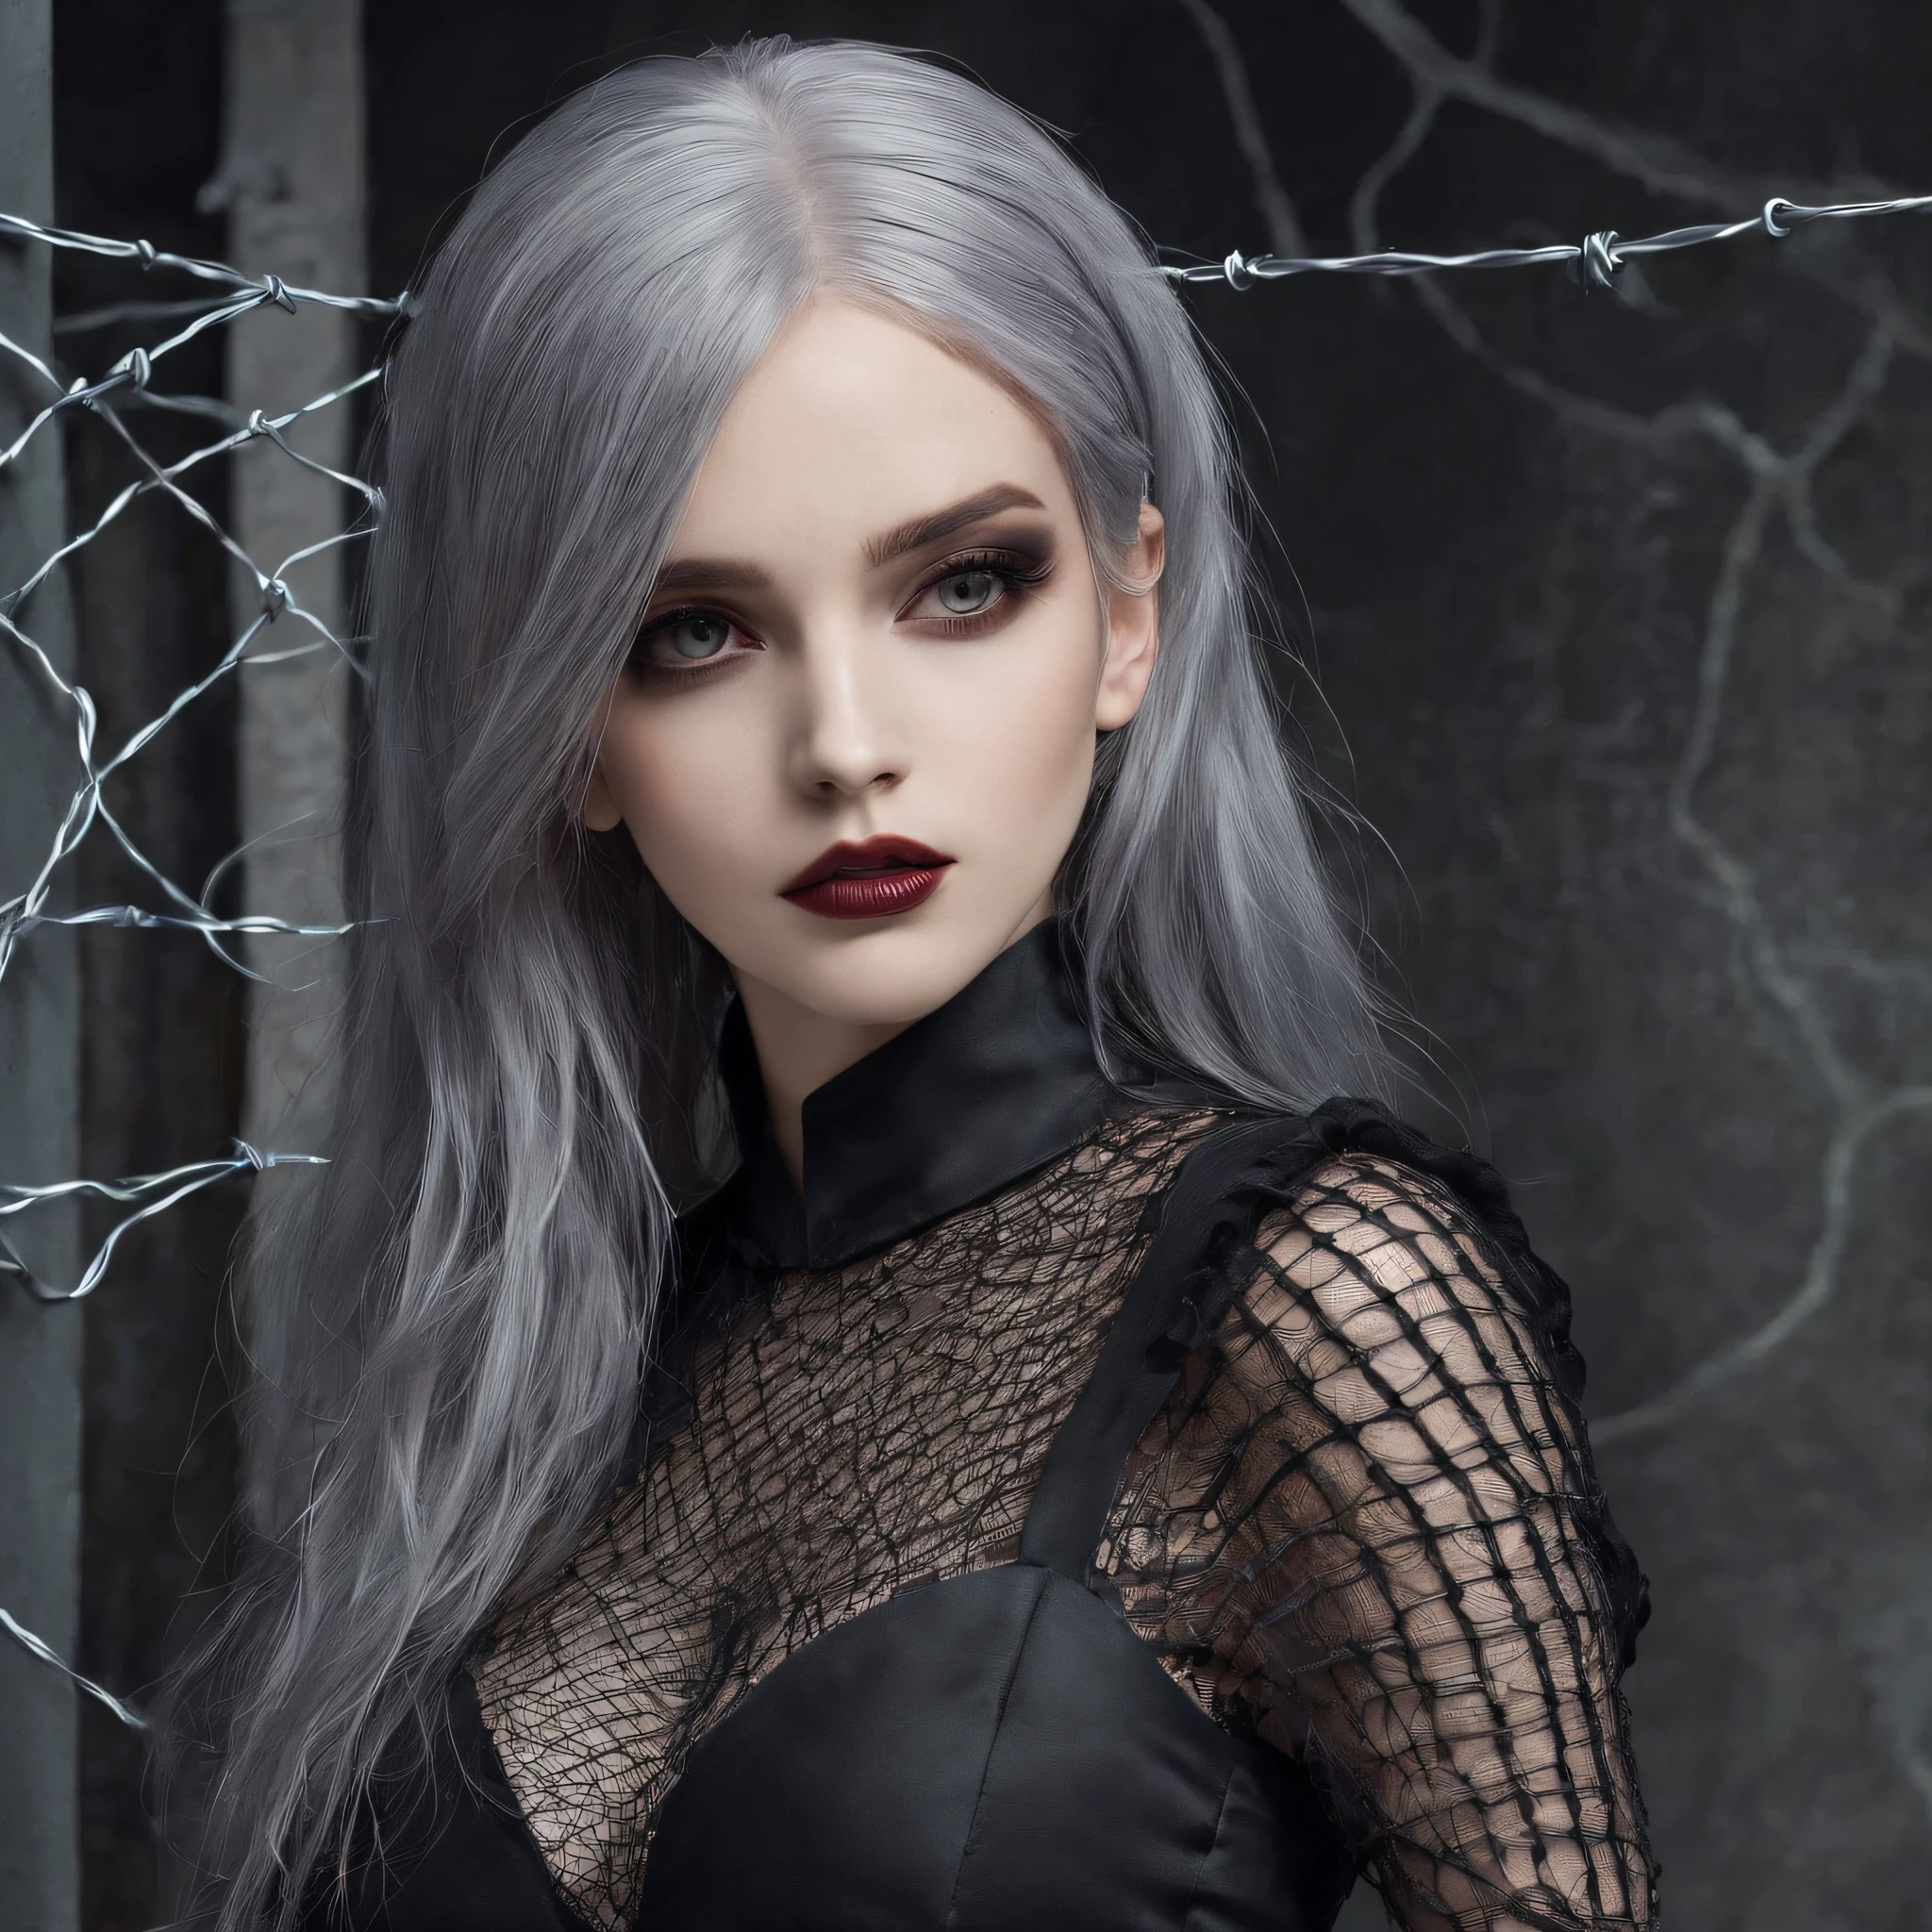 Mädchen in symbolischer Kleidung aus gotischem Netz, 。.。.mit (Stacheldraht für den Körper) brünette Farbe Haar，Graue Haarspitzen